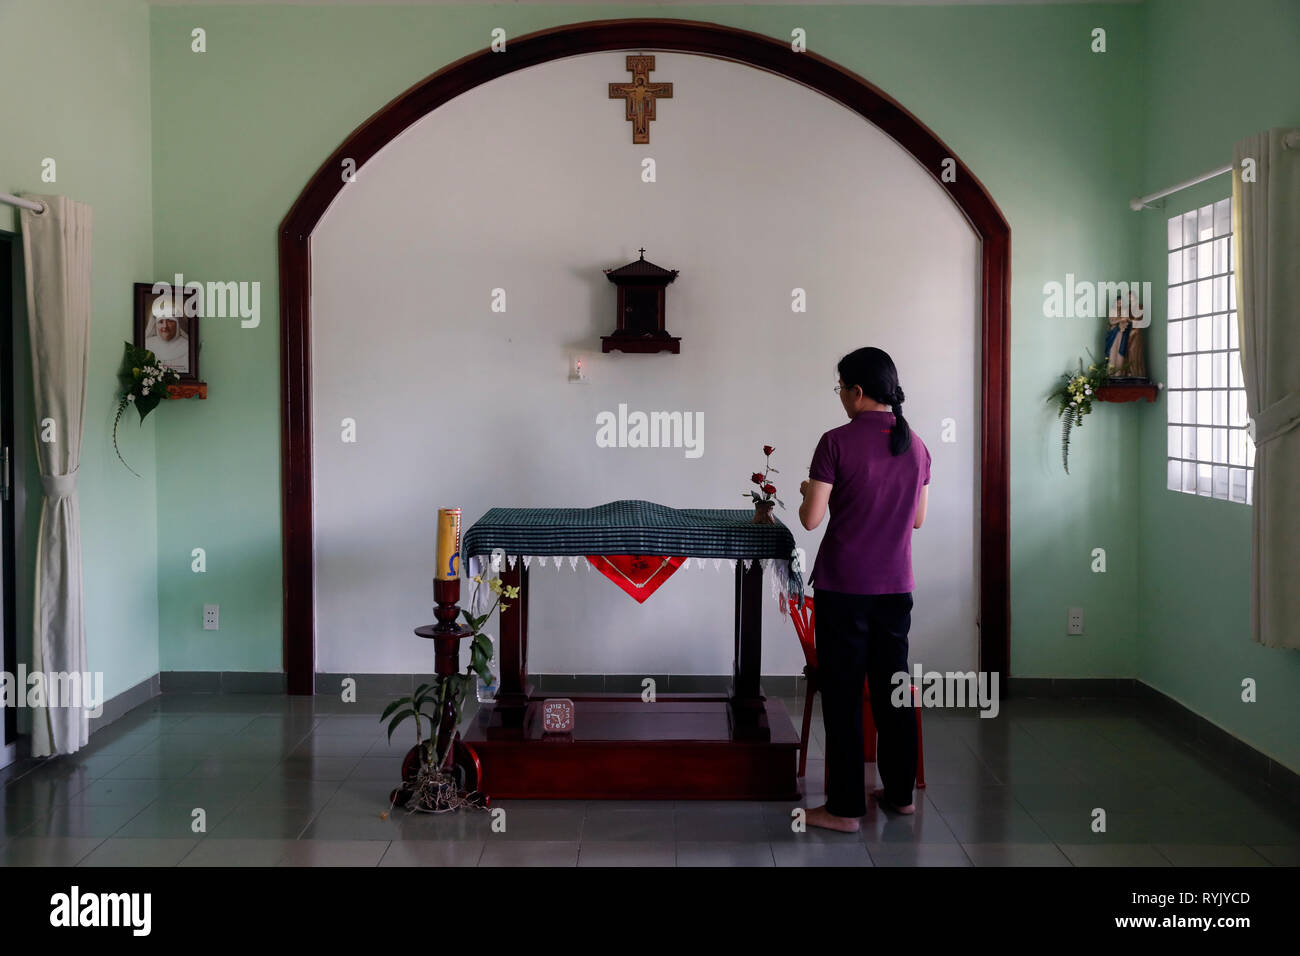 Zentrum für blinde Kinder von Kindern Aktion ausführen. Die Kapelle. Katholische Kapelle. Ho Chi Minh City. Vietnam. Stockfoto